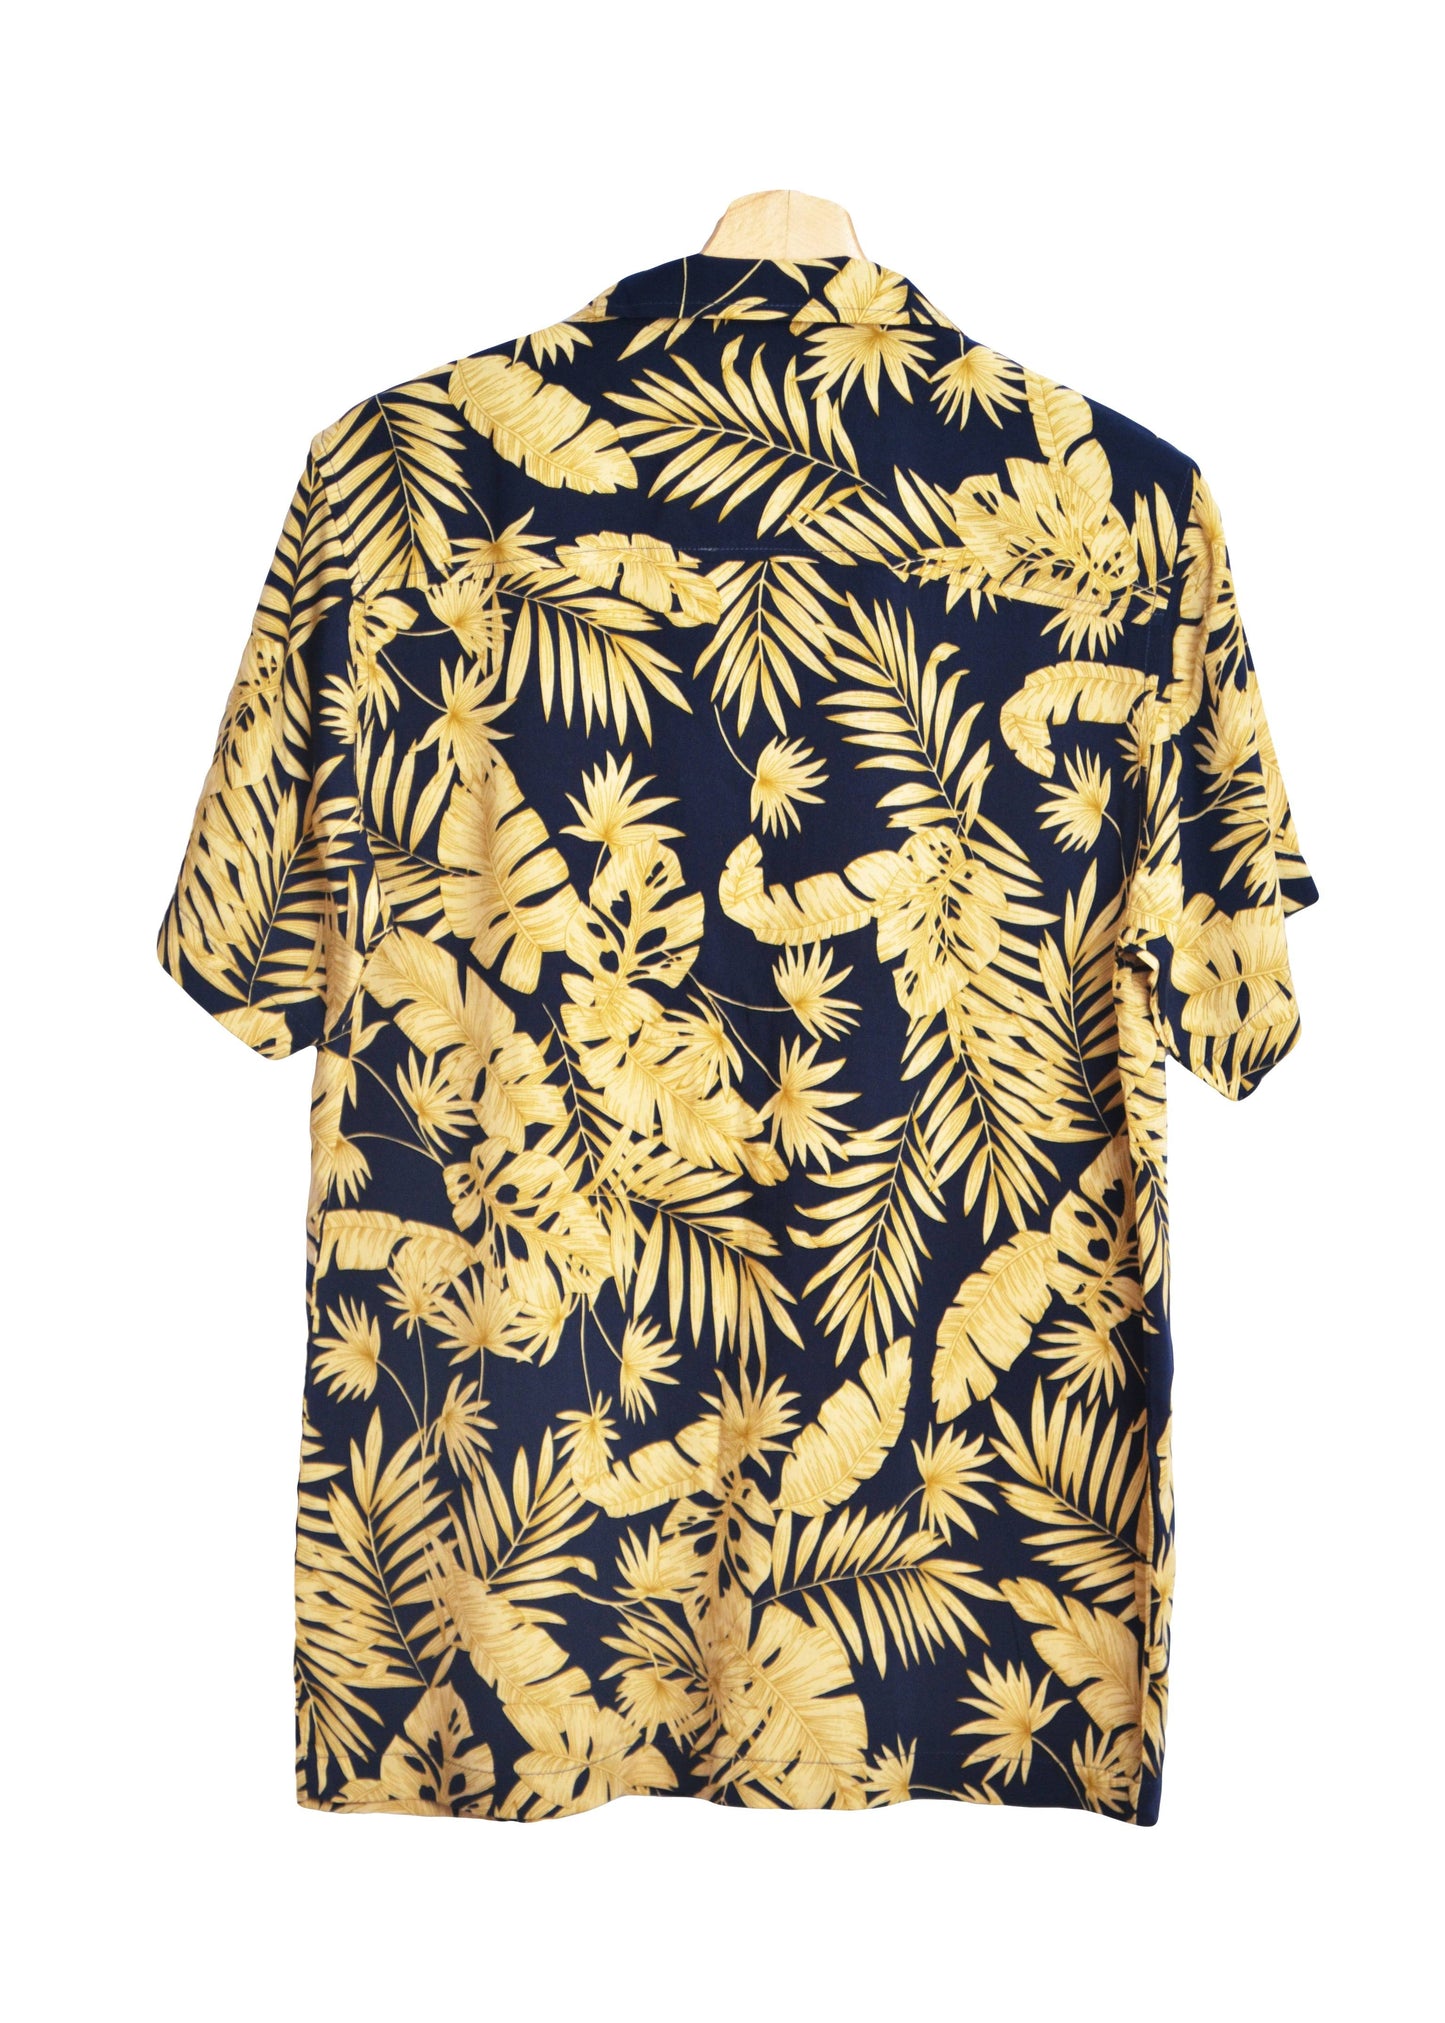 Vu dos Chemise hawaienne couleur bleu marine à feuilles dorées - GL BOUTIK